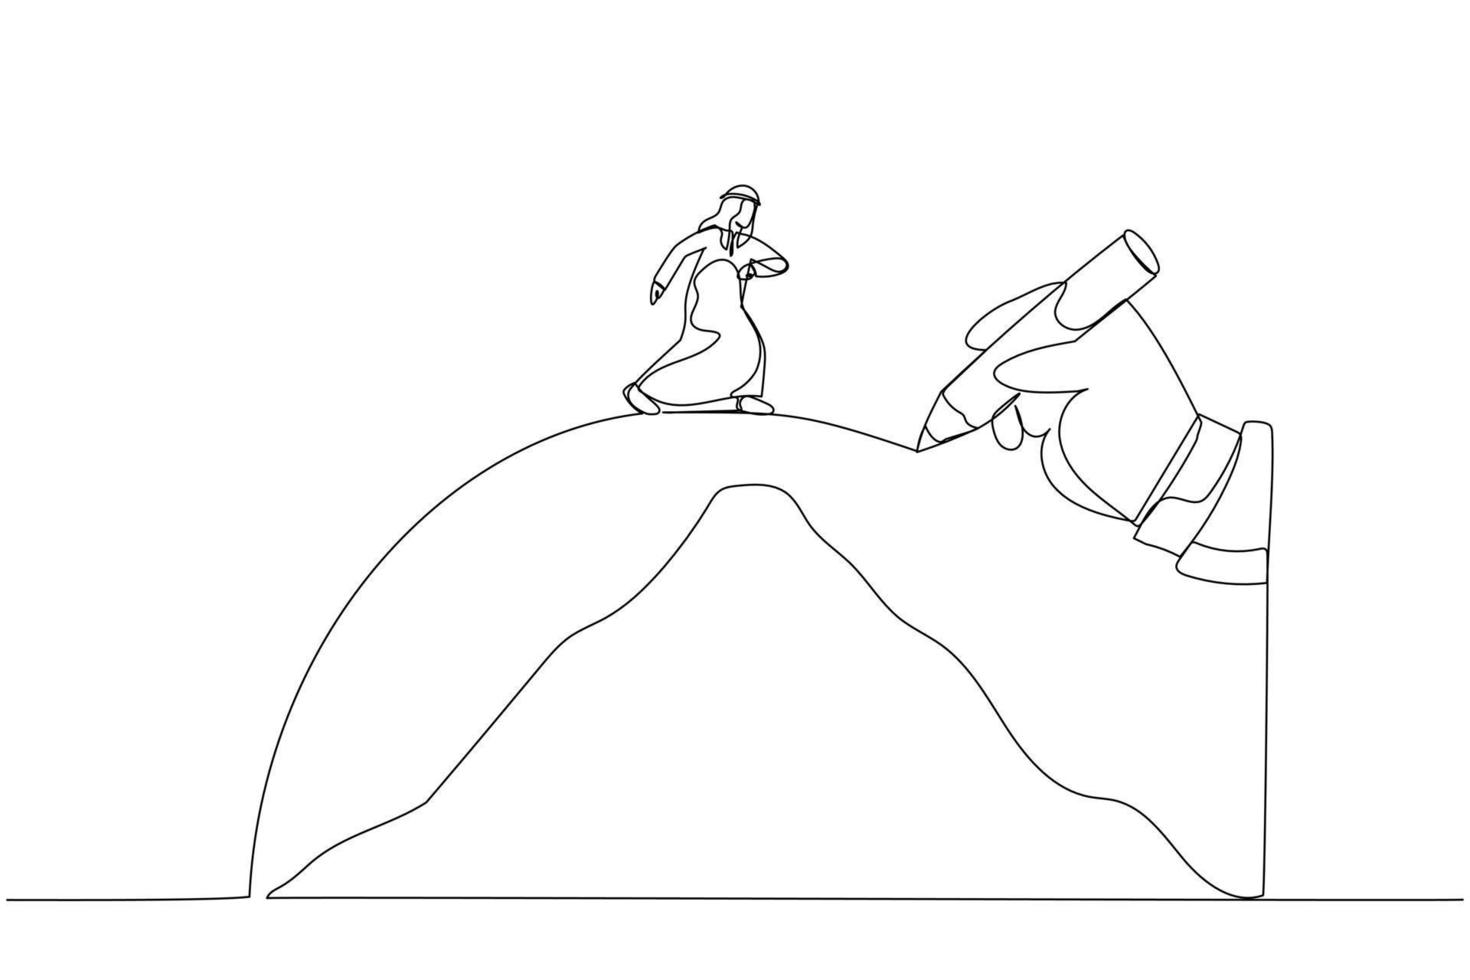 le dessin d'une main géante dessine un chemin pour aider l'homme d'affaires arabe à traverser les montagnes, métaphore de la conquête de l'adversité. art de style une ligne vecteur